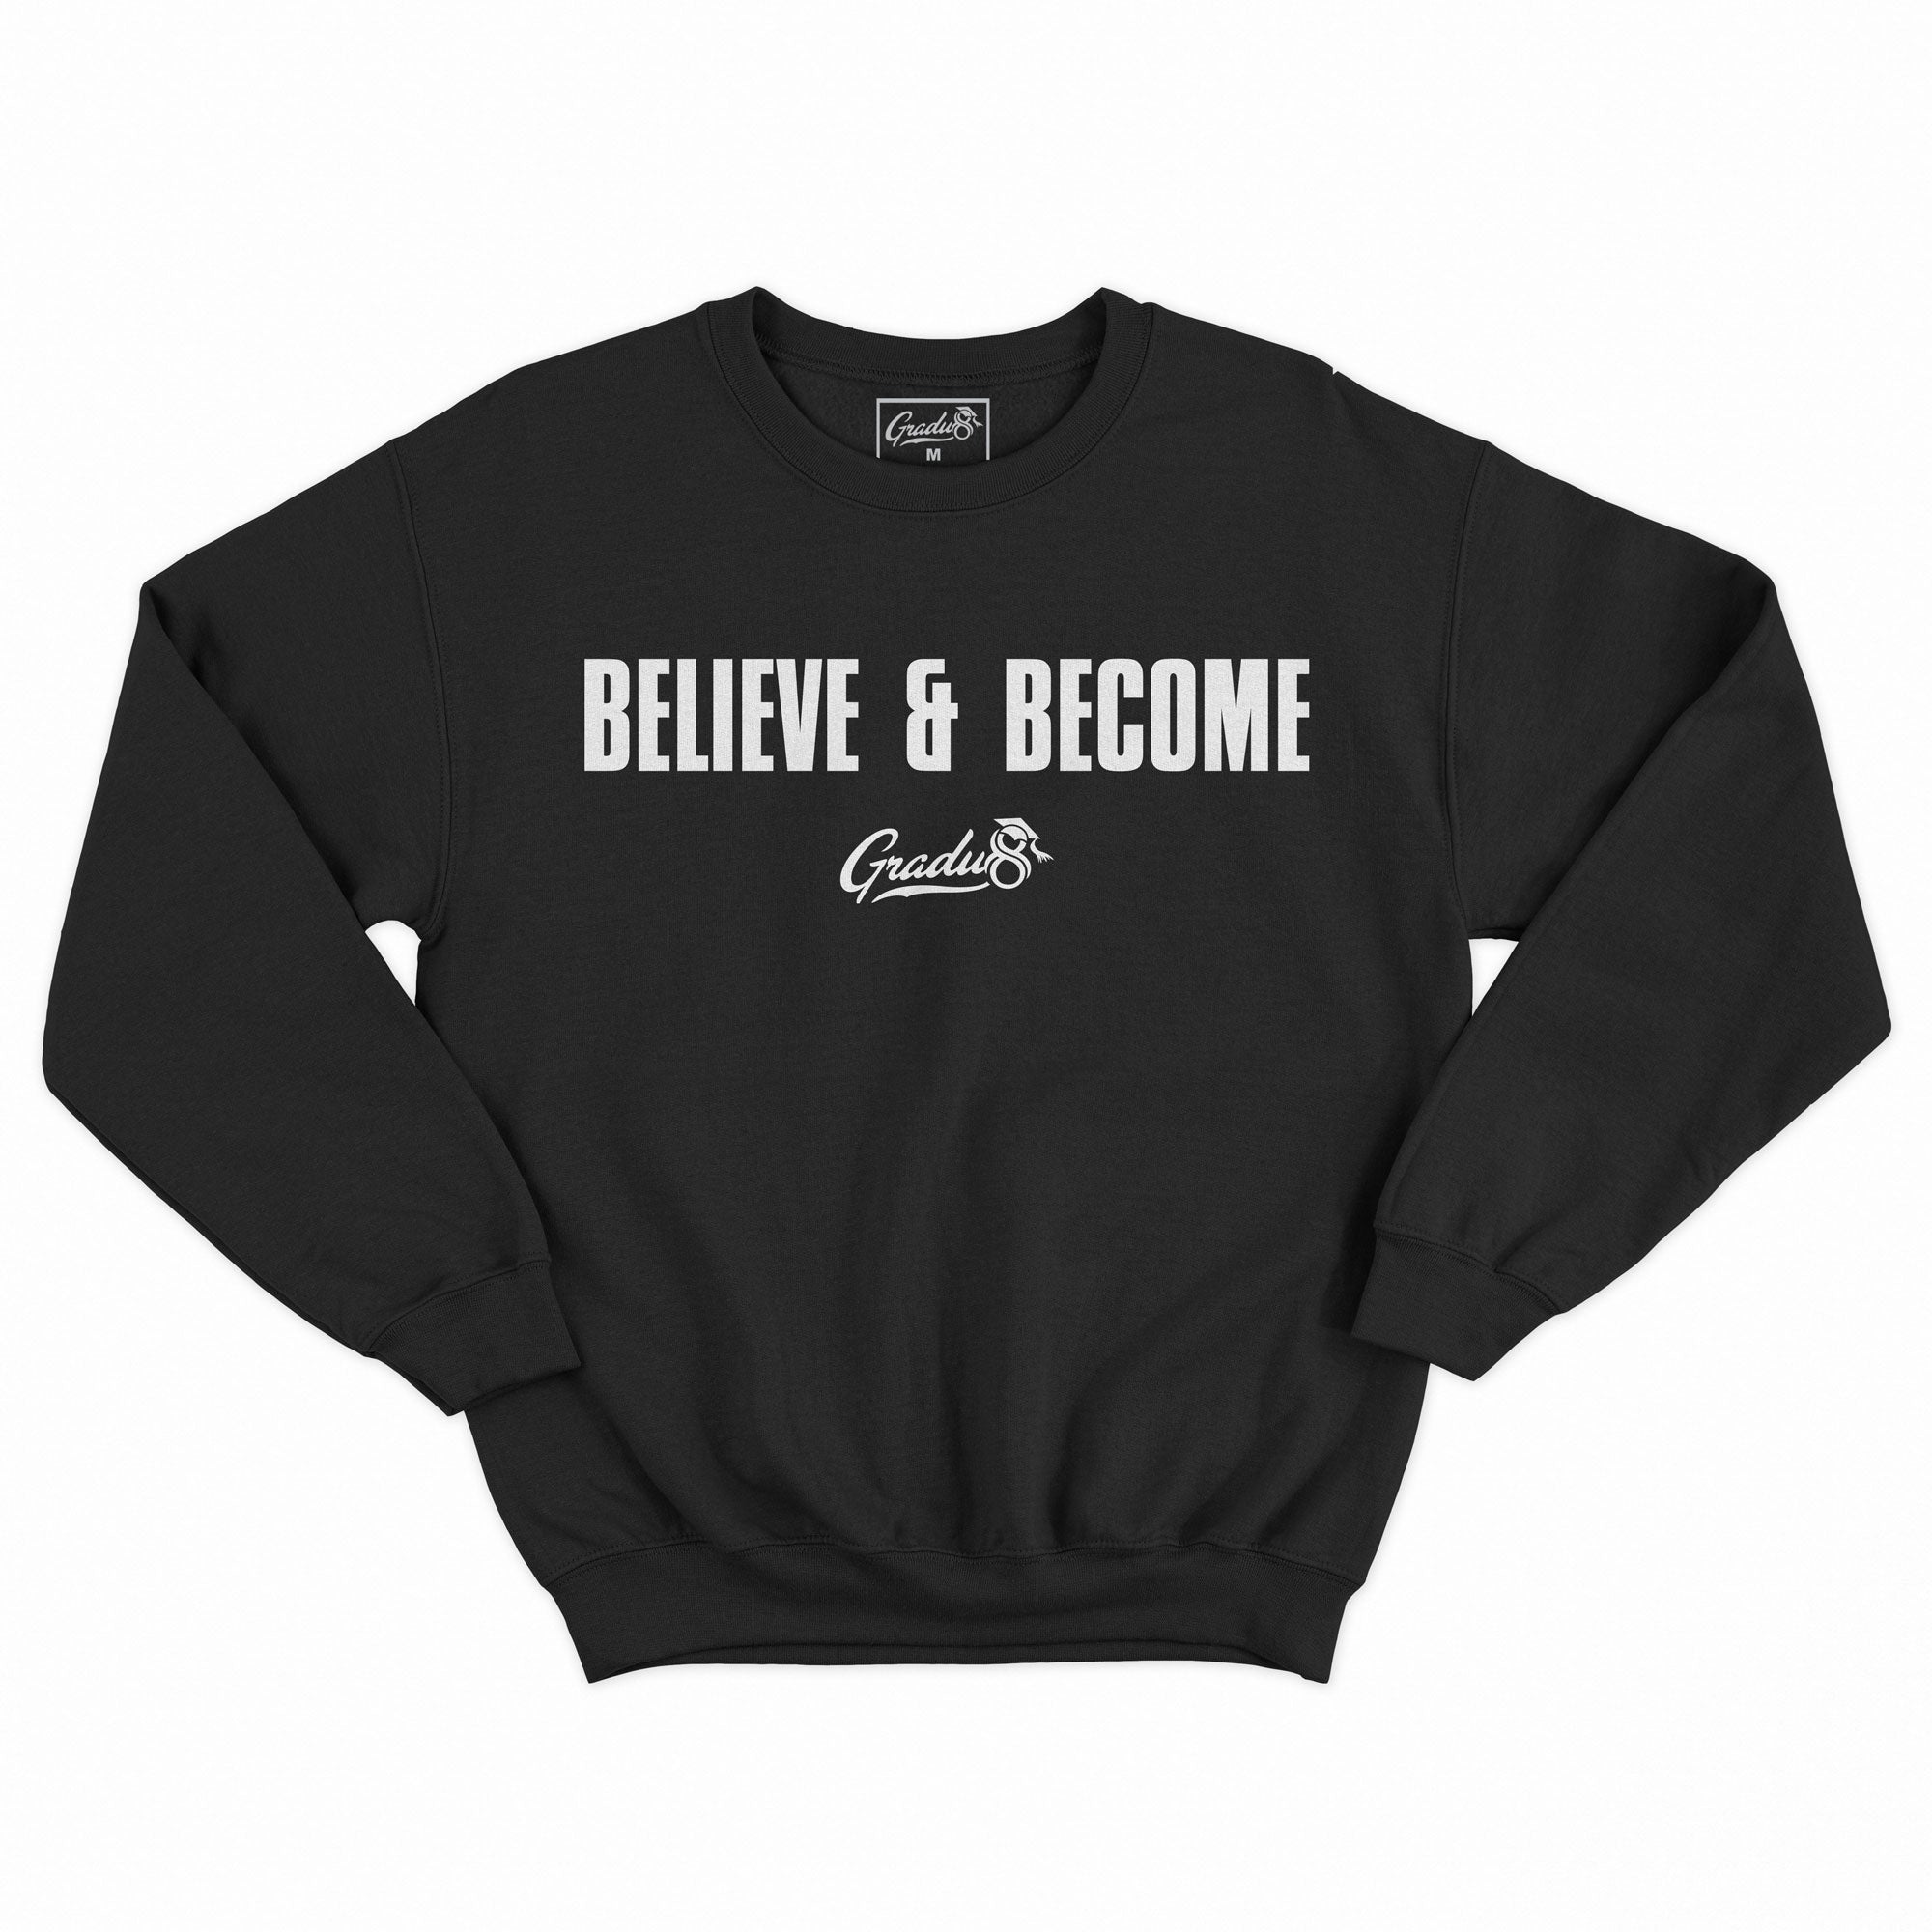 Official Believe & Become Premium Sweatshirt - Black